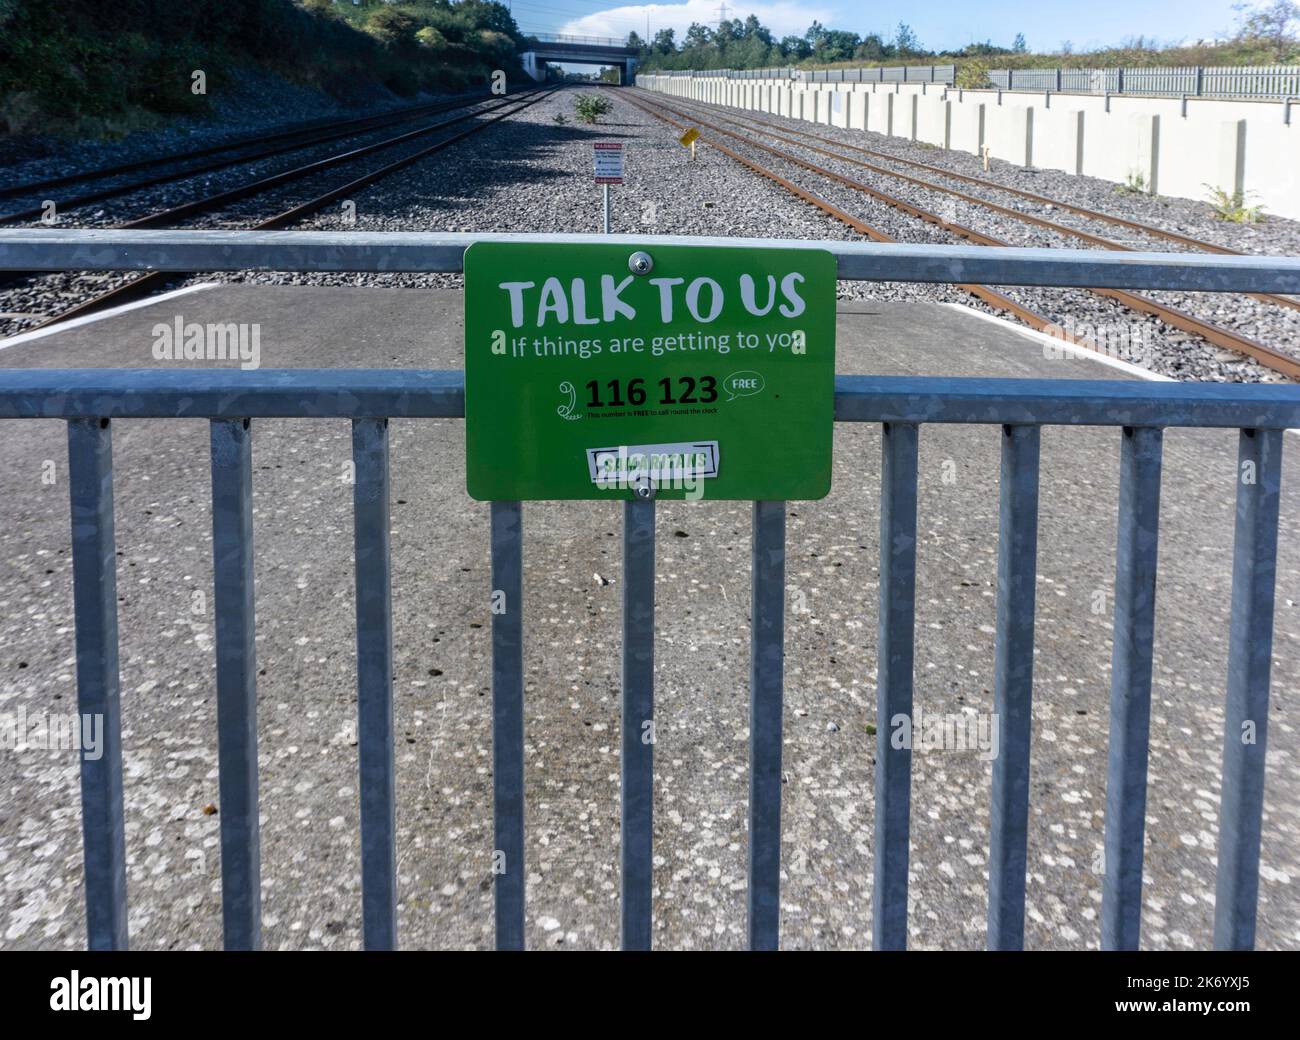 Un cartello vicino ad una linea ferroviaria a Dublino, Irlanda, per i Samaritani, che consiglia alle persone in difficoltà di parlare con i Samaritani, Foto Stock